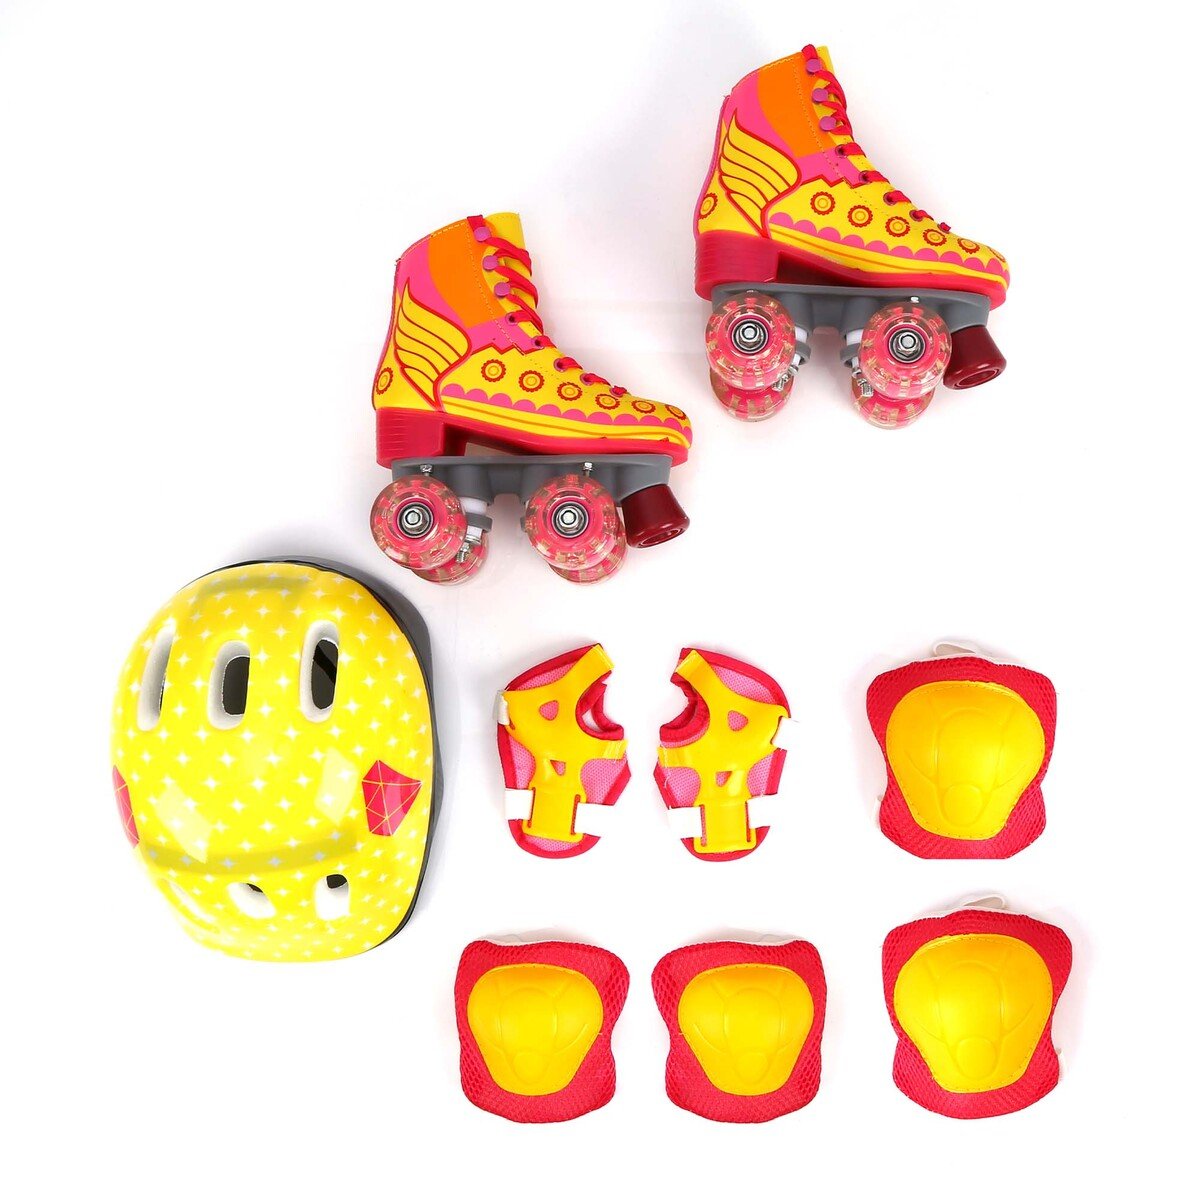 سبورتس إنك حذاء تزلج للأطفال بأربع عجلات و أضاءة LED + خوذة + طقم دعم للاكواع + طقم داعم للركبة HJ-F019 مقاس 30 سمول